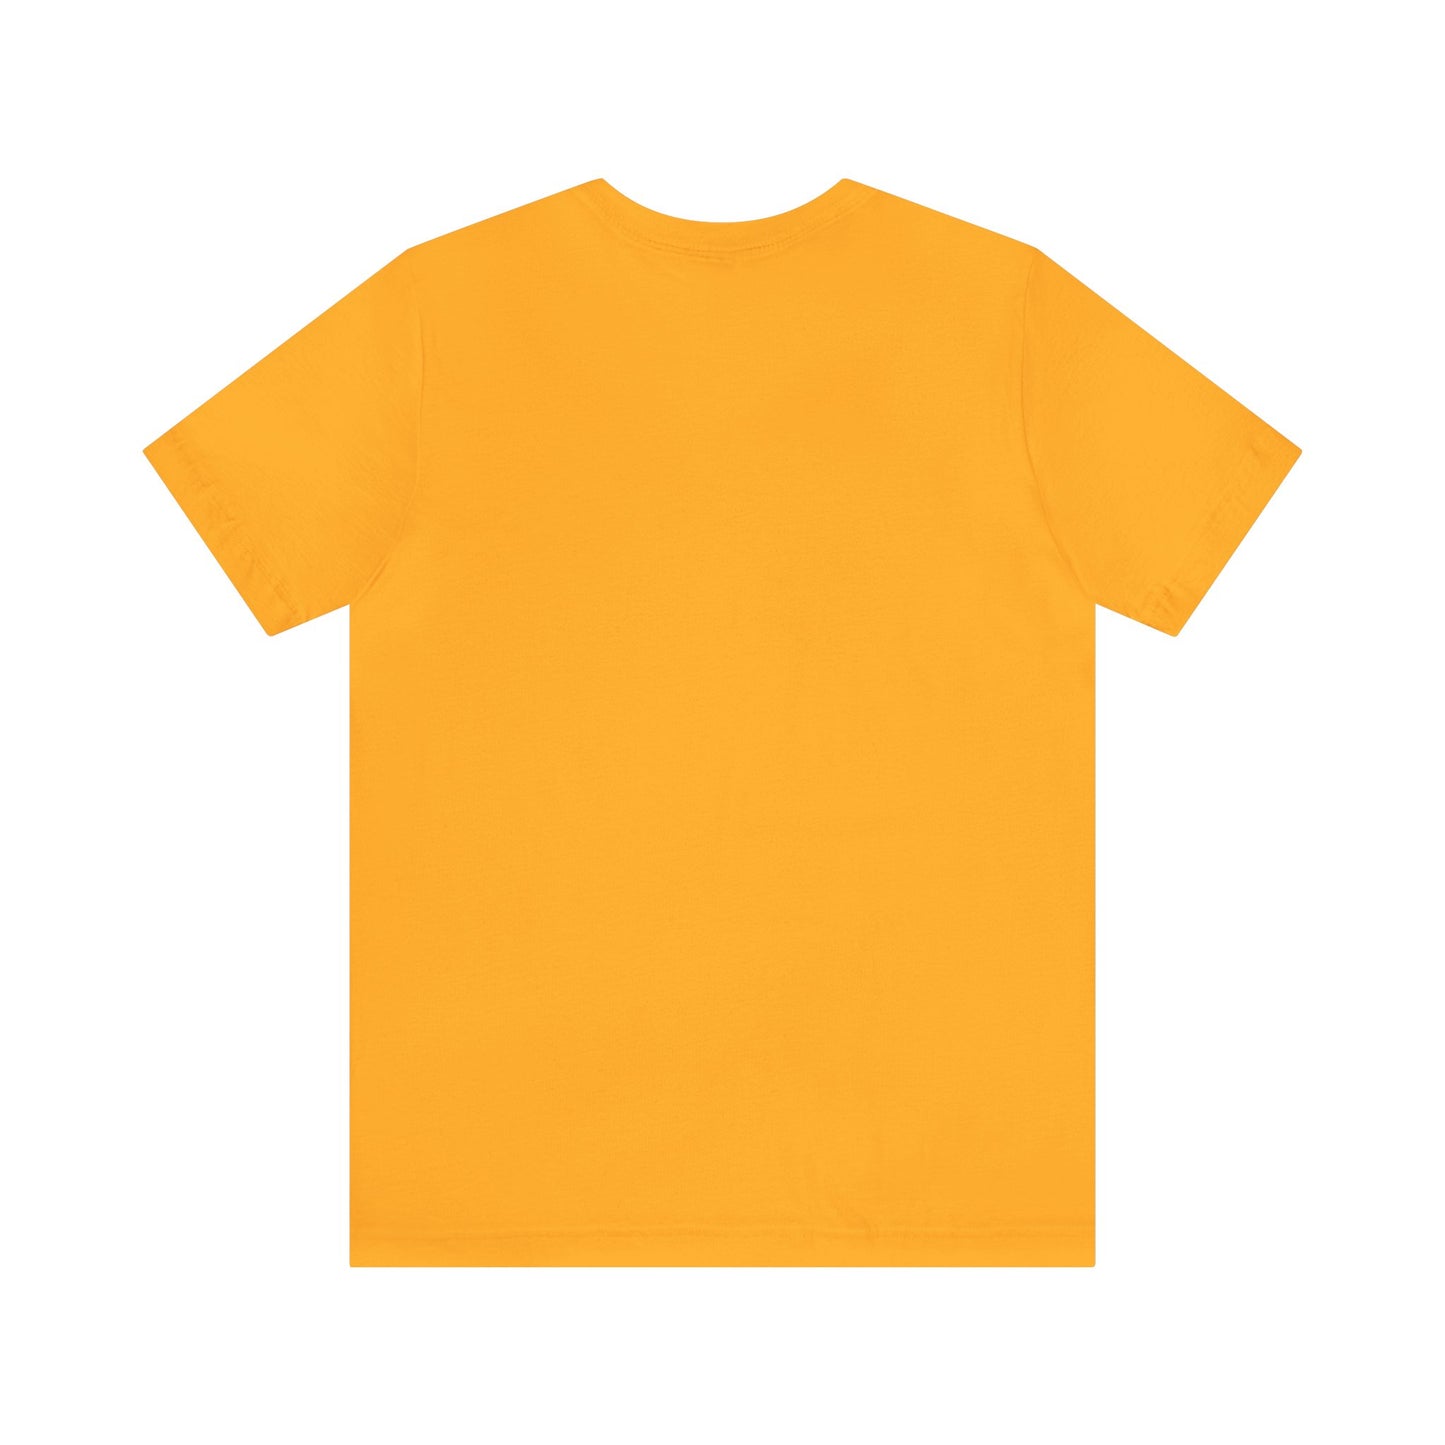 Unisex Jersey Short Sleeve Gold T Shirt